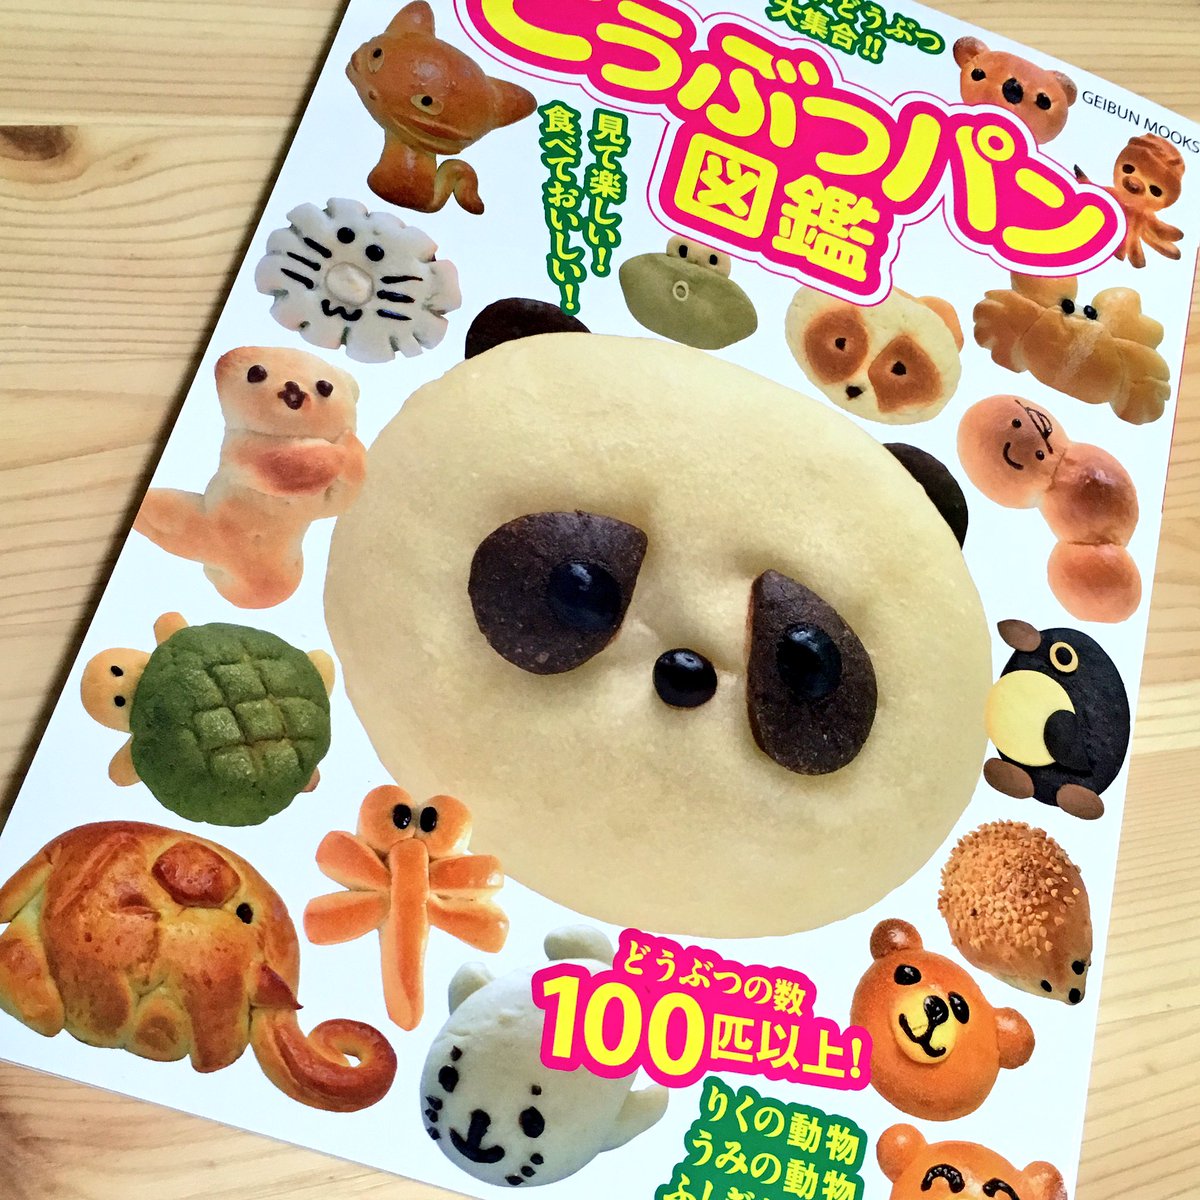 粘土動物パンmoka Pa Twitter 東京 横浜どうぶつパン図鑑 すっごく可愛いです 表紙の内側のパン柄がかわゆ過ぎました 111ページもあって写真も大きく 見応えがあり 動物パンの販売期間や価格など 内容も盛り沢山で 眺めているだけでも癒されました